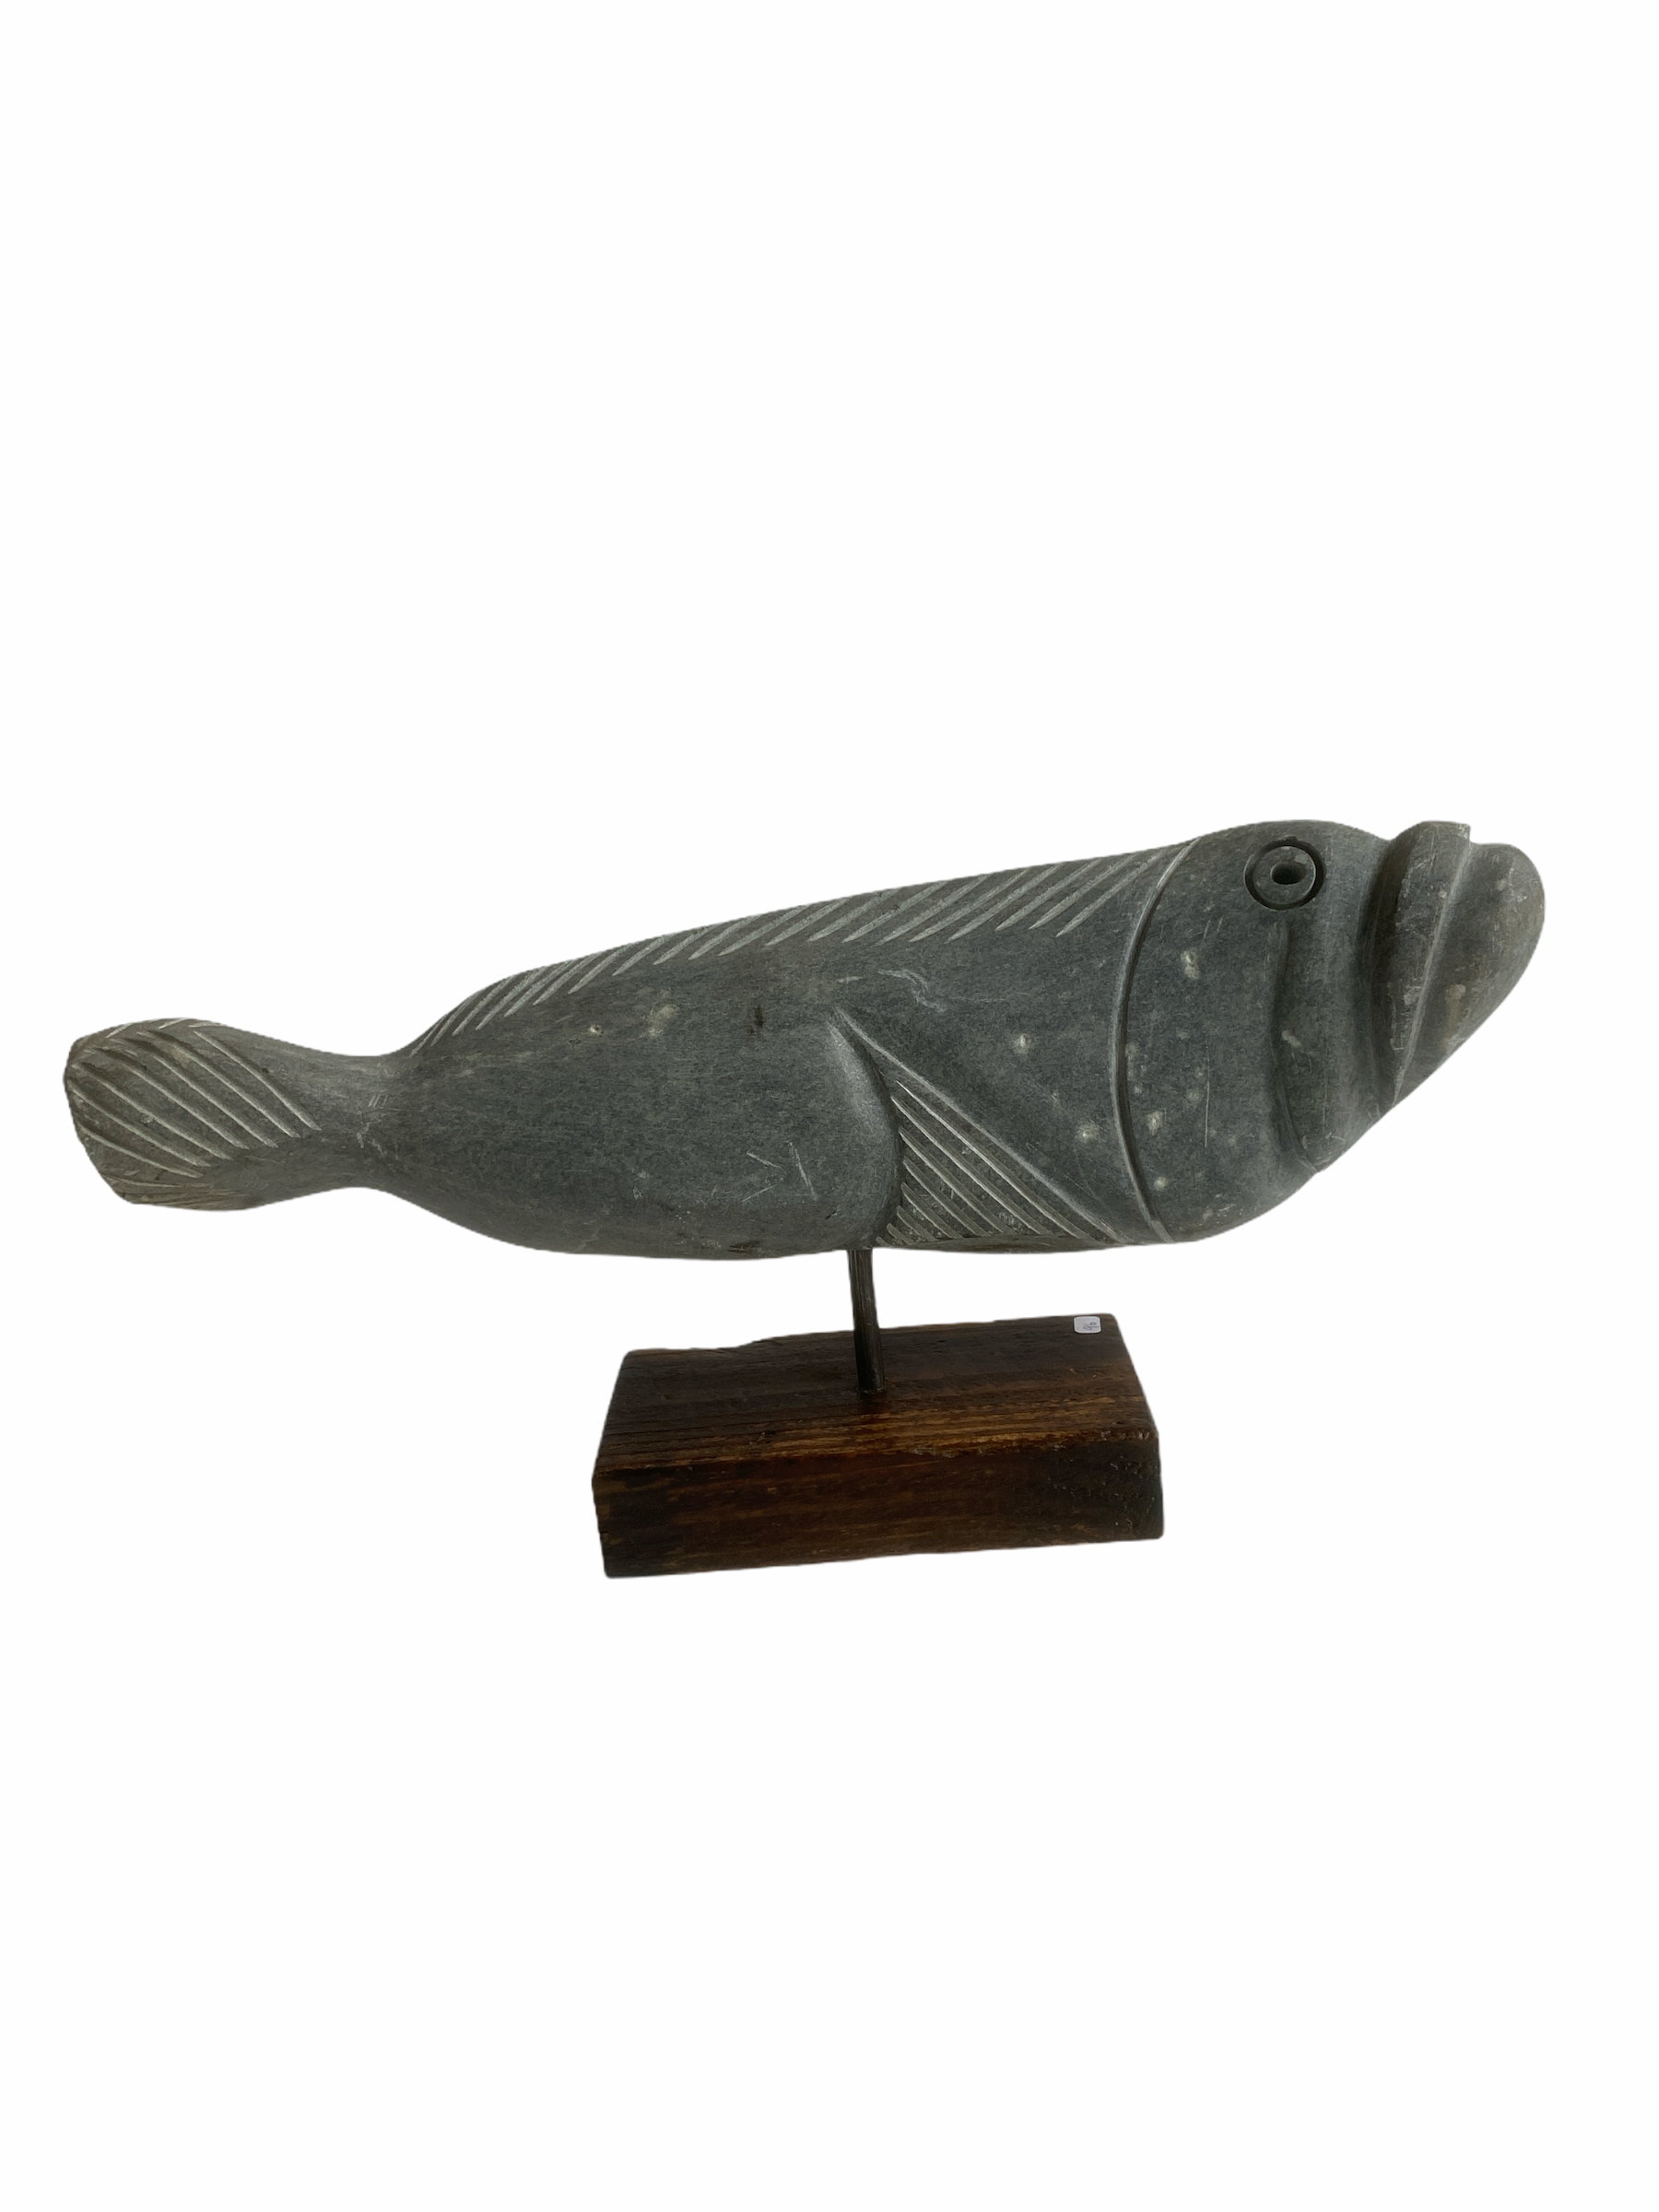 Stone Fish Sculpture - Zimbabwe (06)